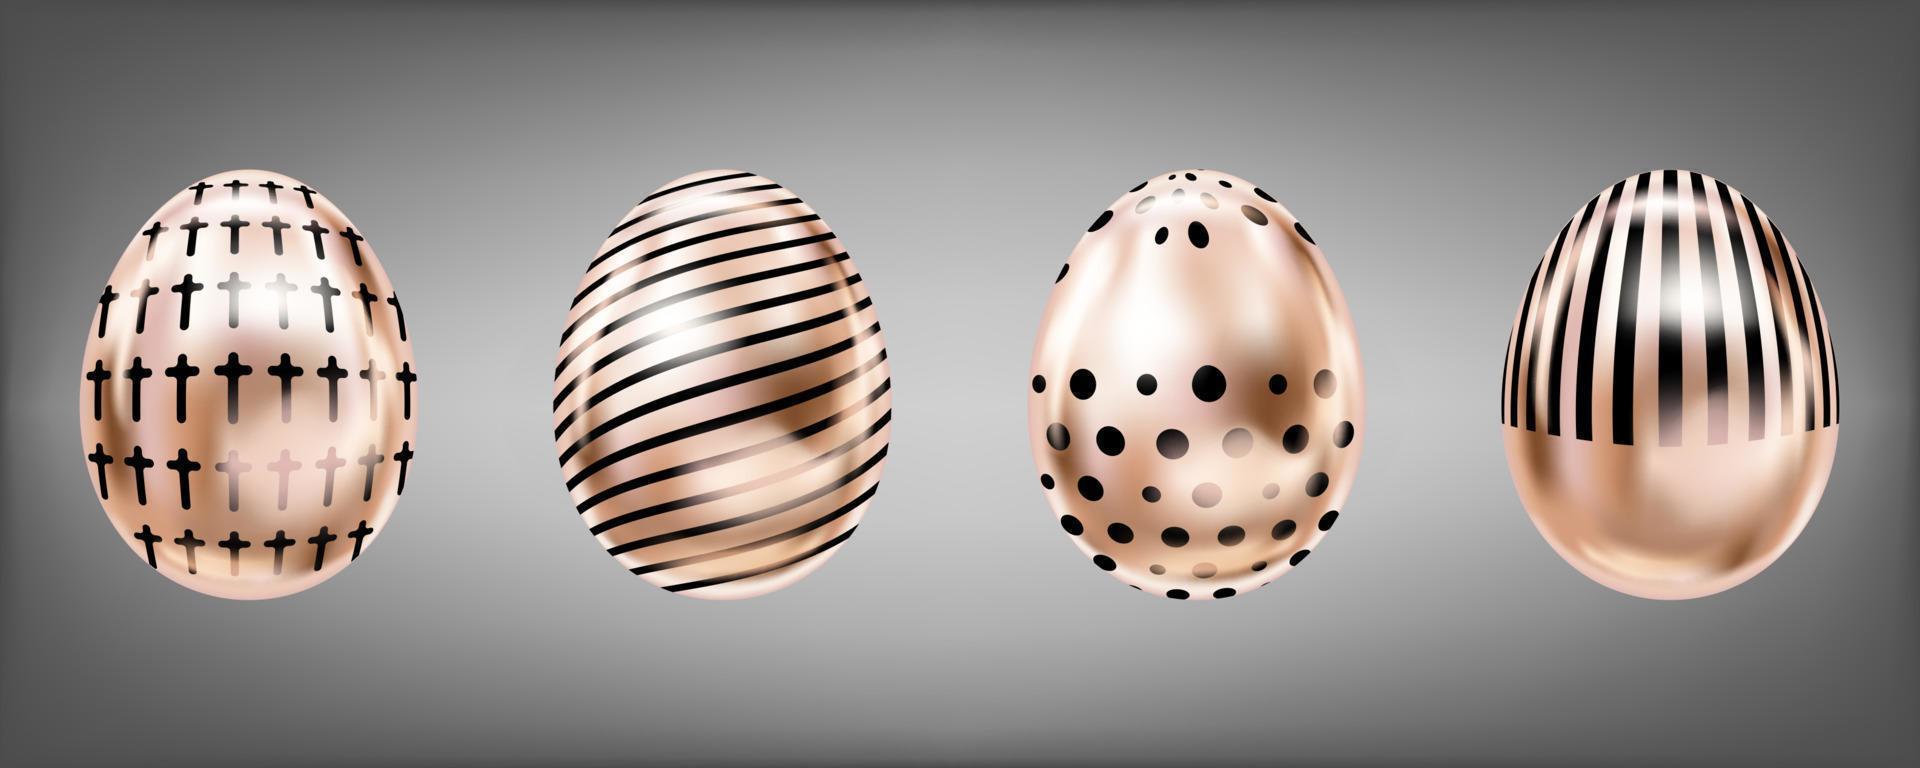 quattro sguardi di uova metalliche di colore rosa con croce nera, punti e strisce. oggetti isolati per la decorazione di pasqua vettore